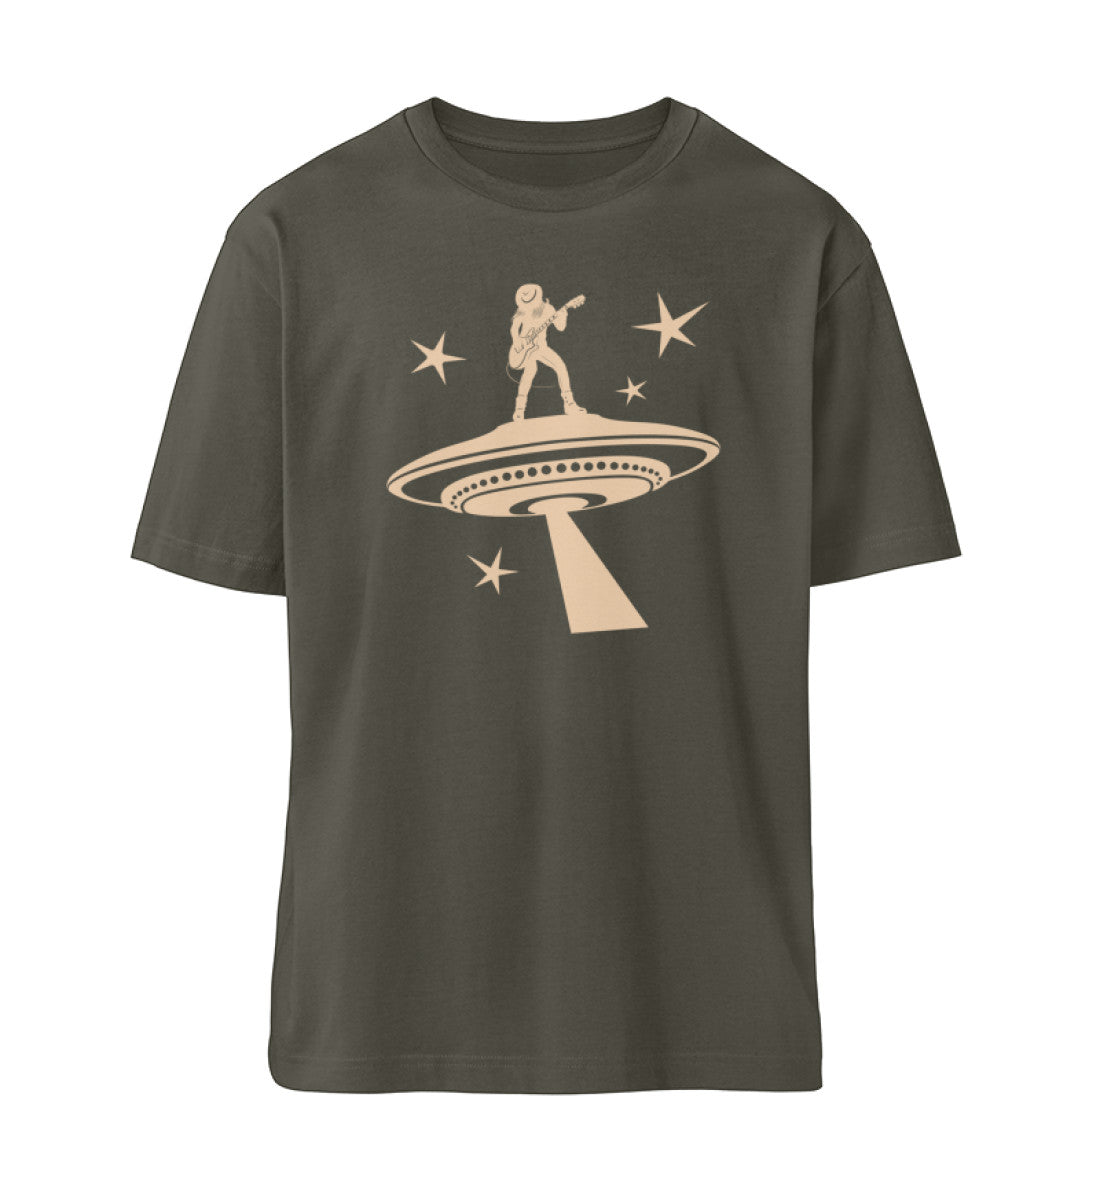 Khaki T-Shirt Unisex Relaxed Fit für Frauen und Männer bedruckt mit dem Design der Roger Rockawoo Kollektion Ufo Alien Guitarist outaspace gig